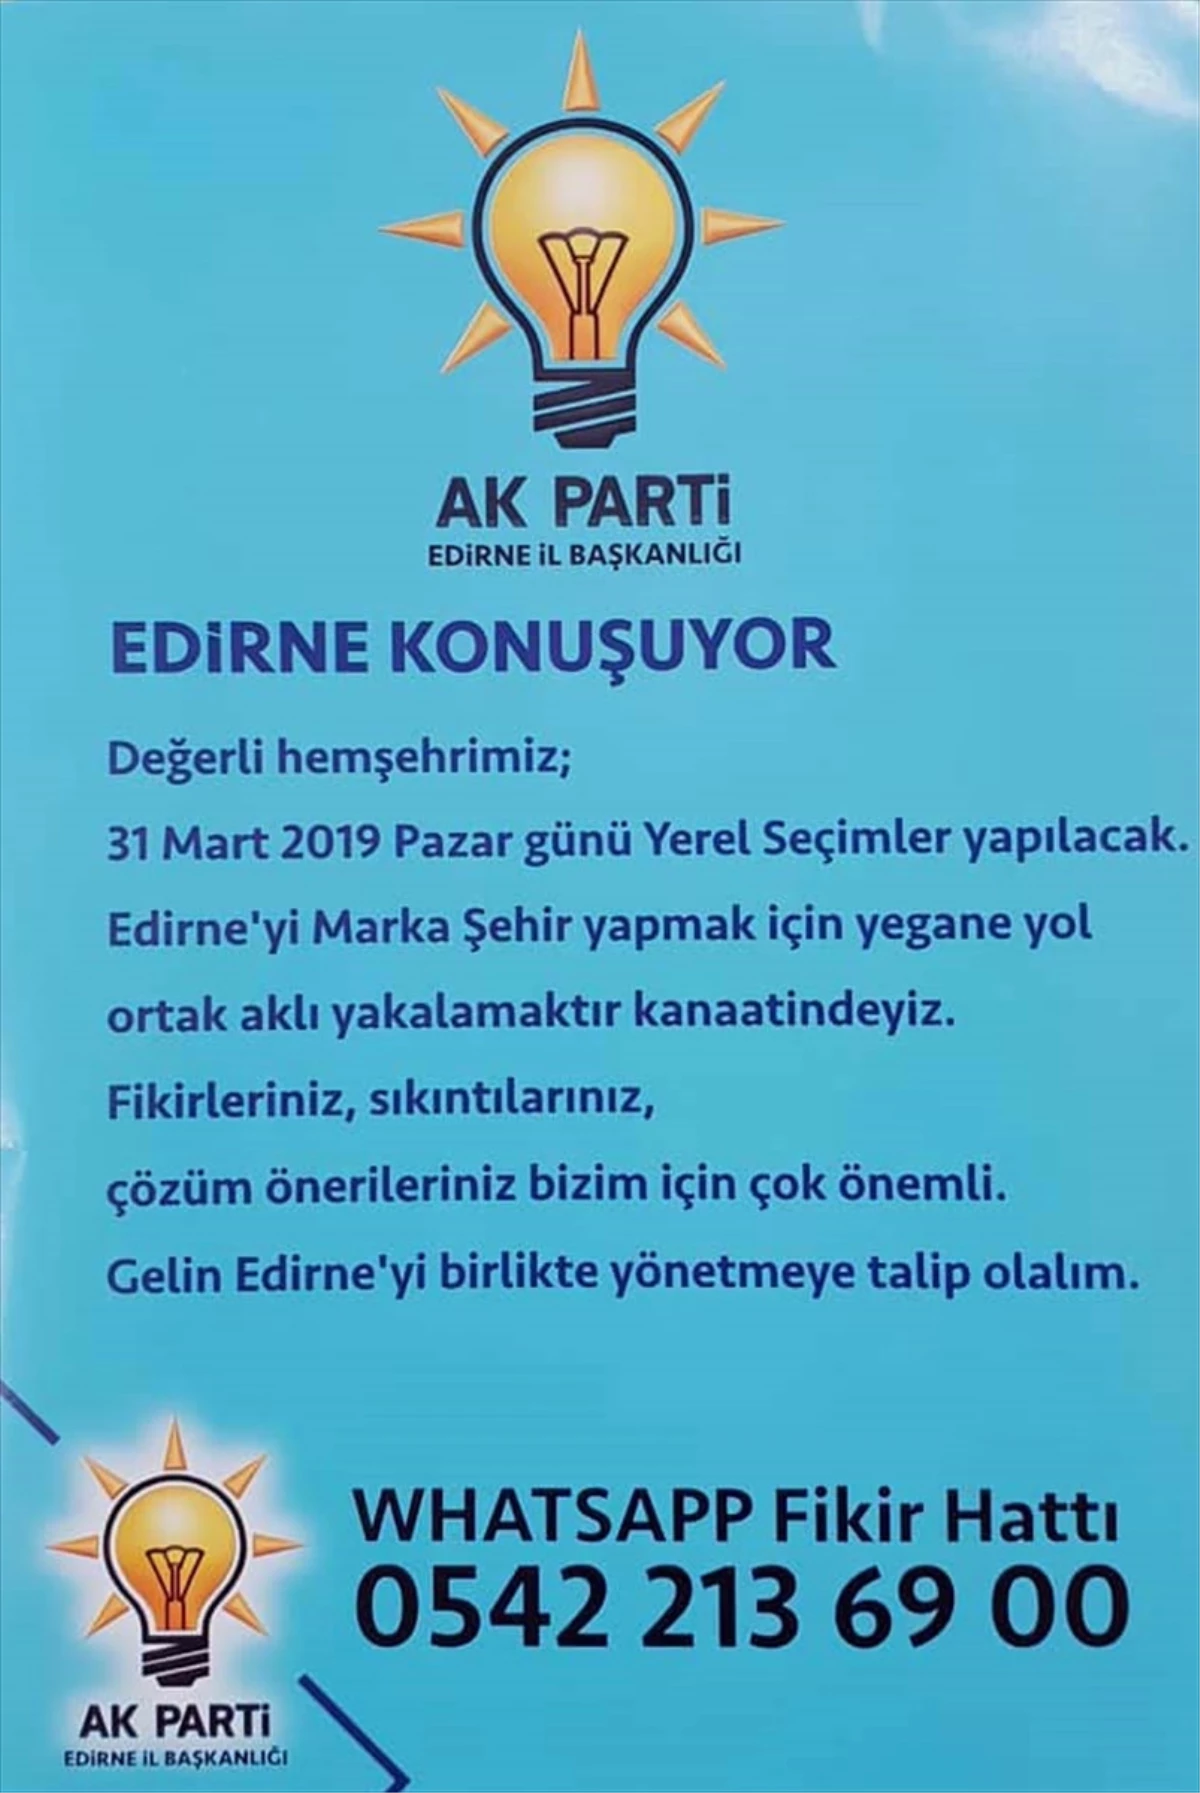 AK Parti Edirne İl Başkanlığı "Fikir Hattı" Kurdu